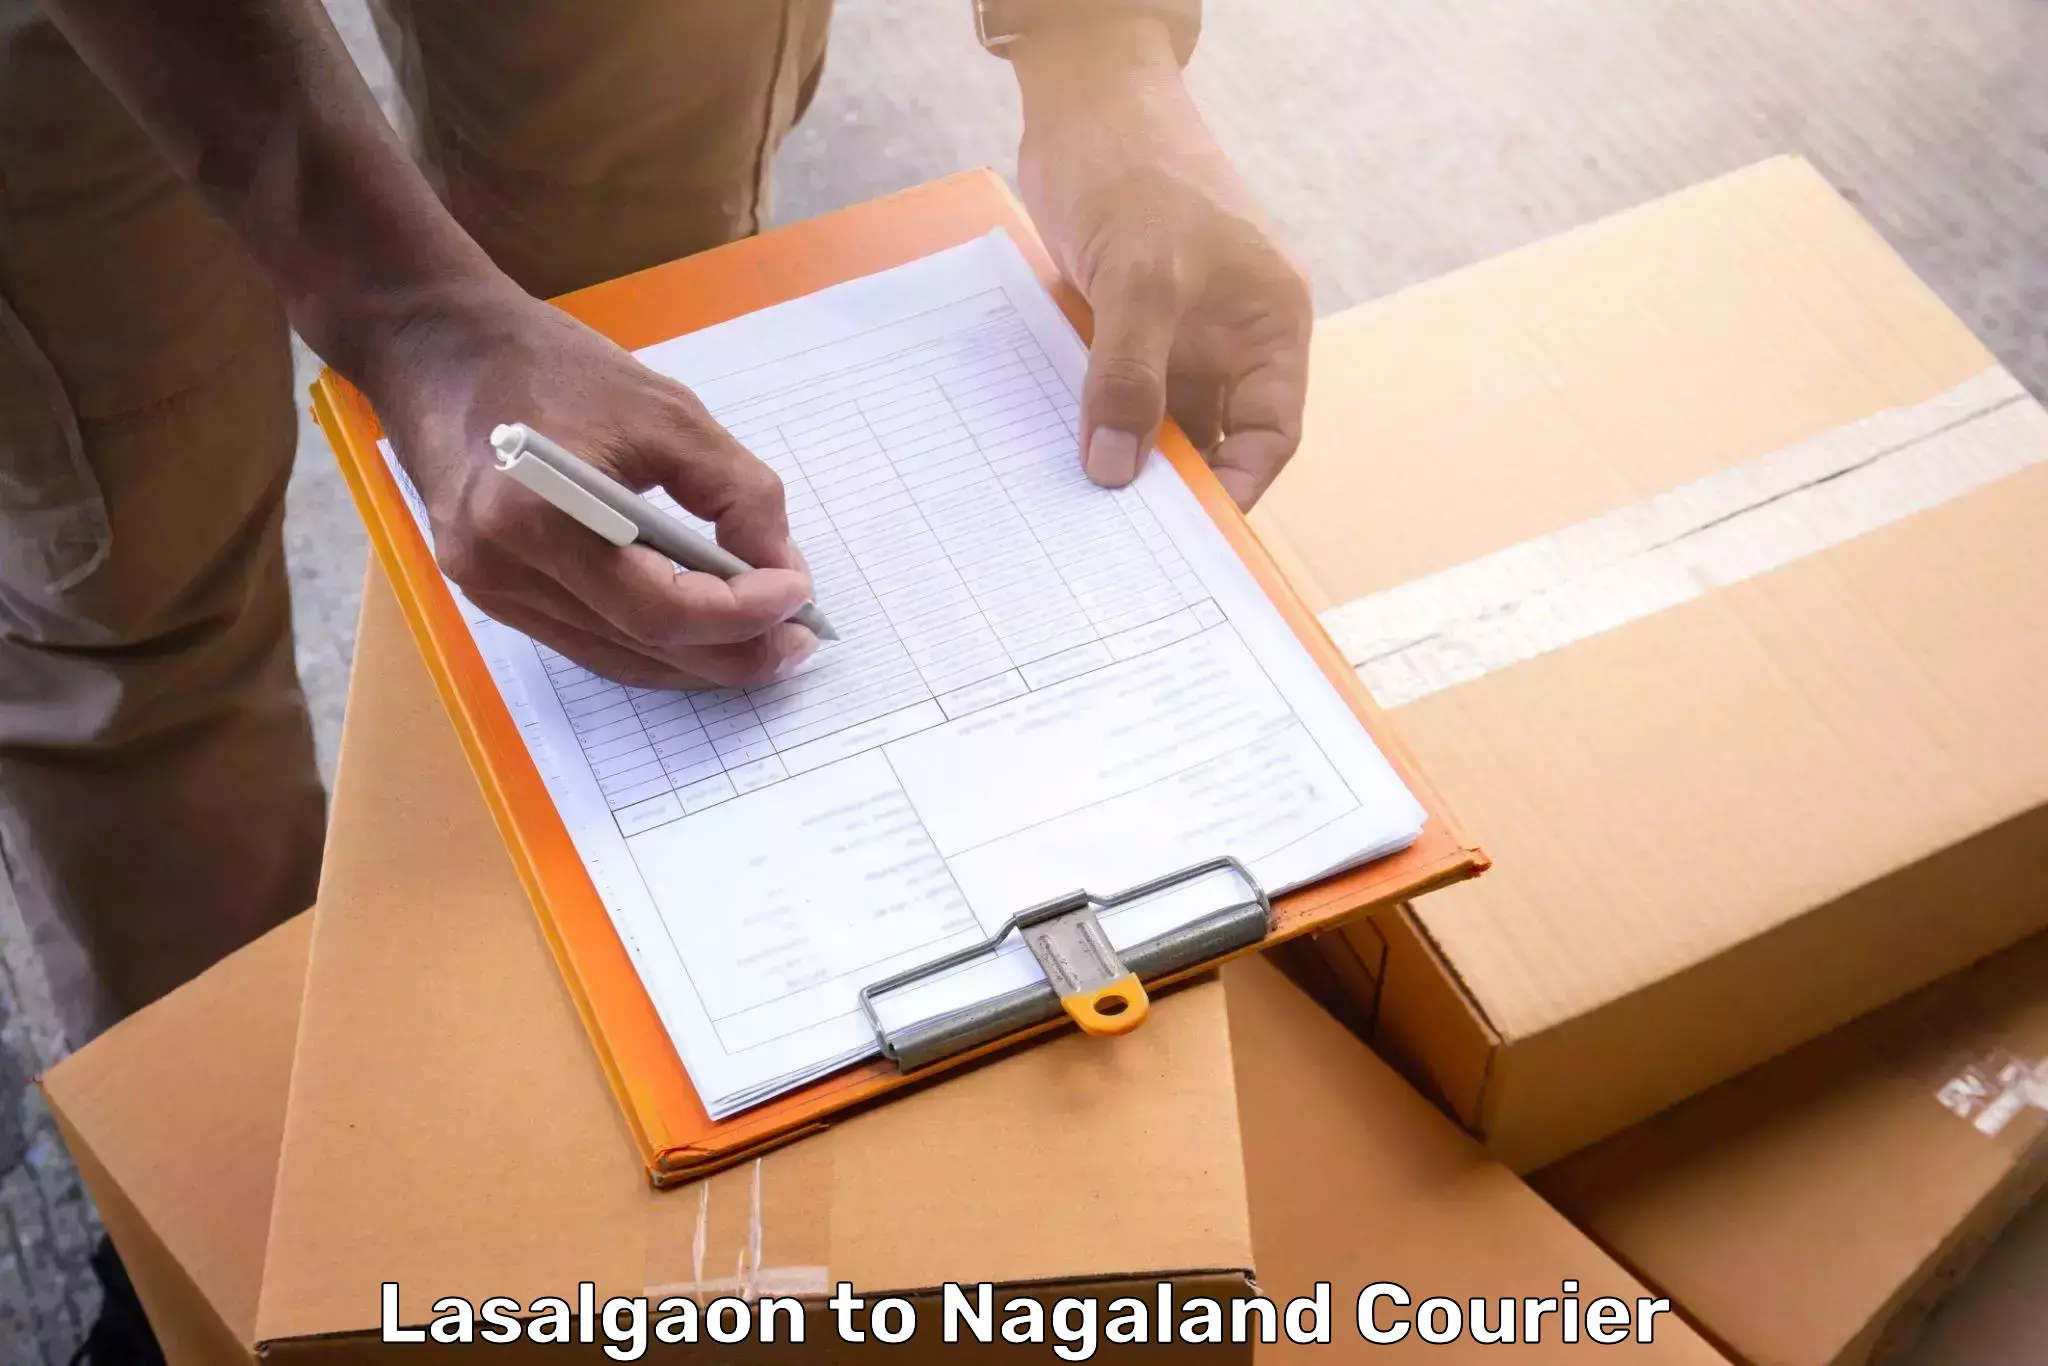 Luggage transport service Lasalgaon to Nagaland